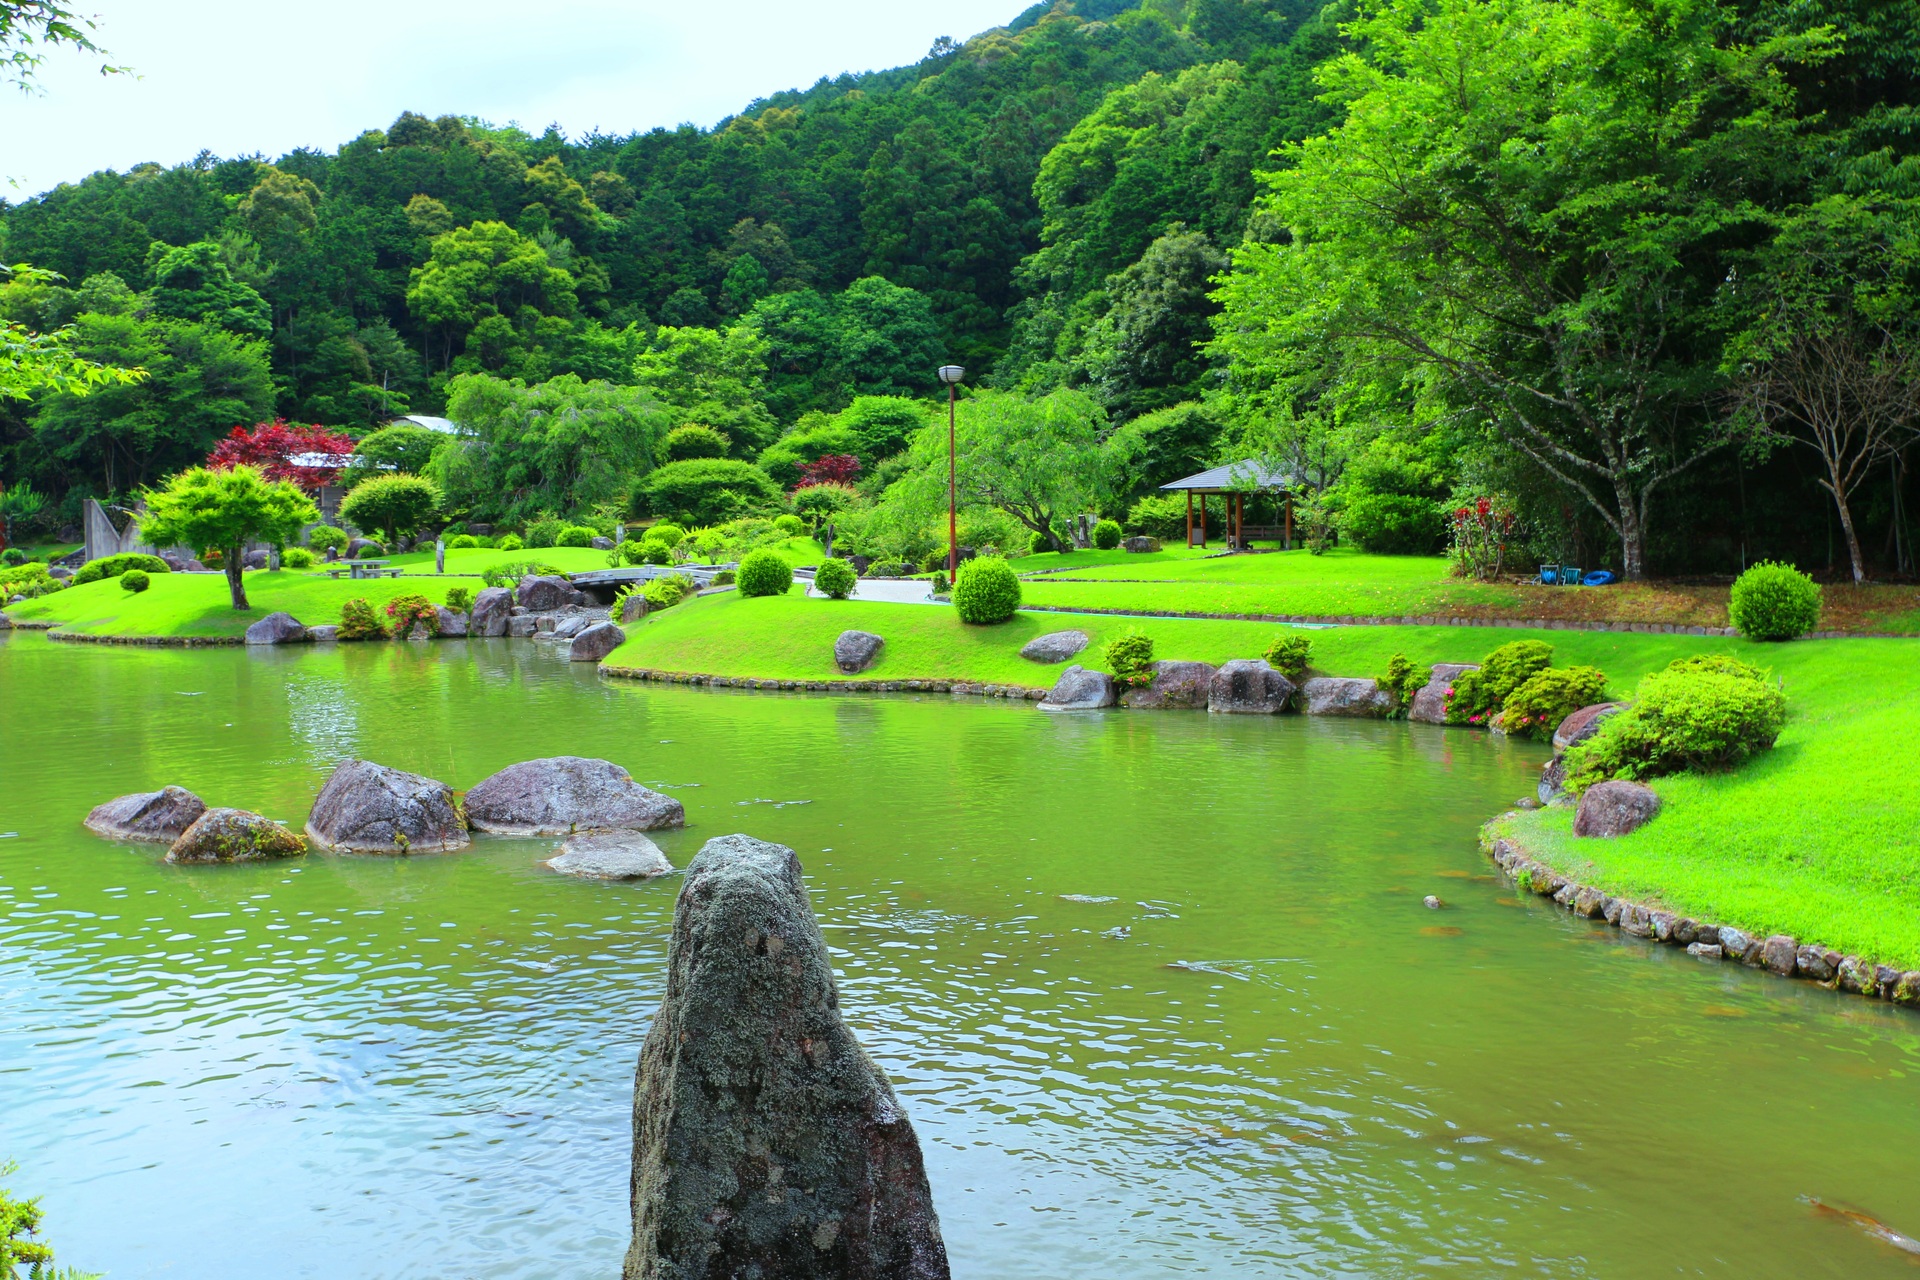 日本の風景 新緑の日本庭園 壁紙19x1280 壁紙館